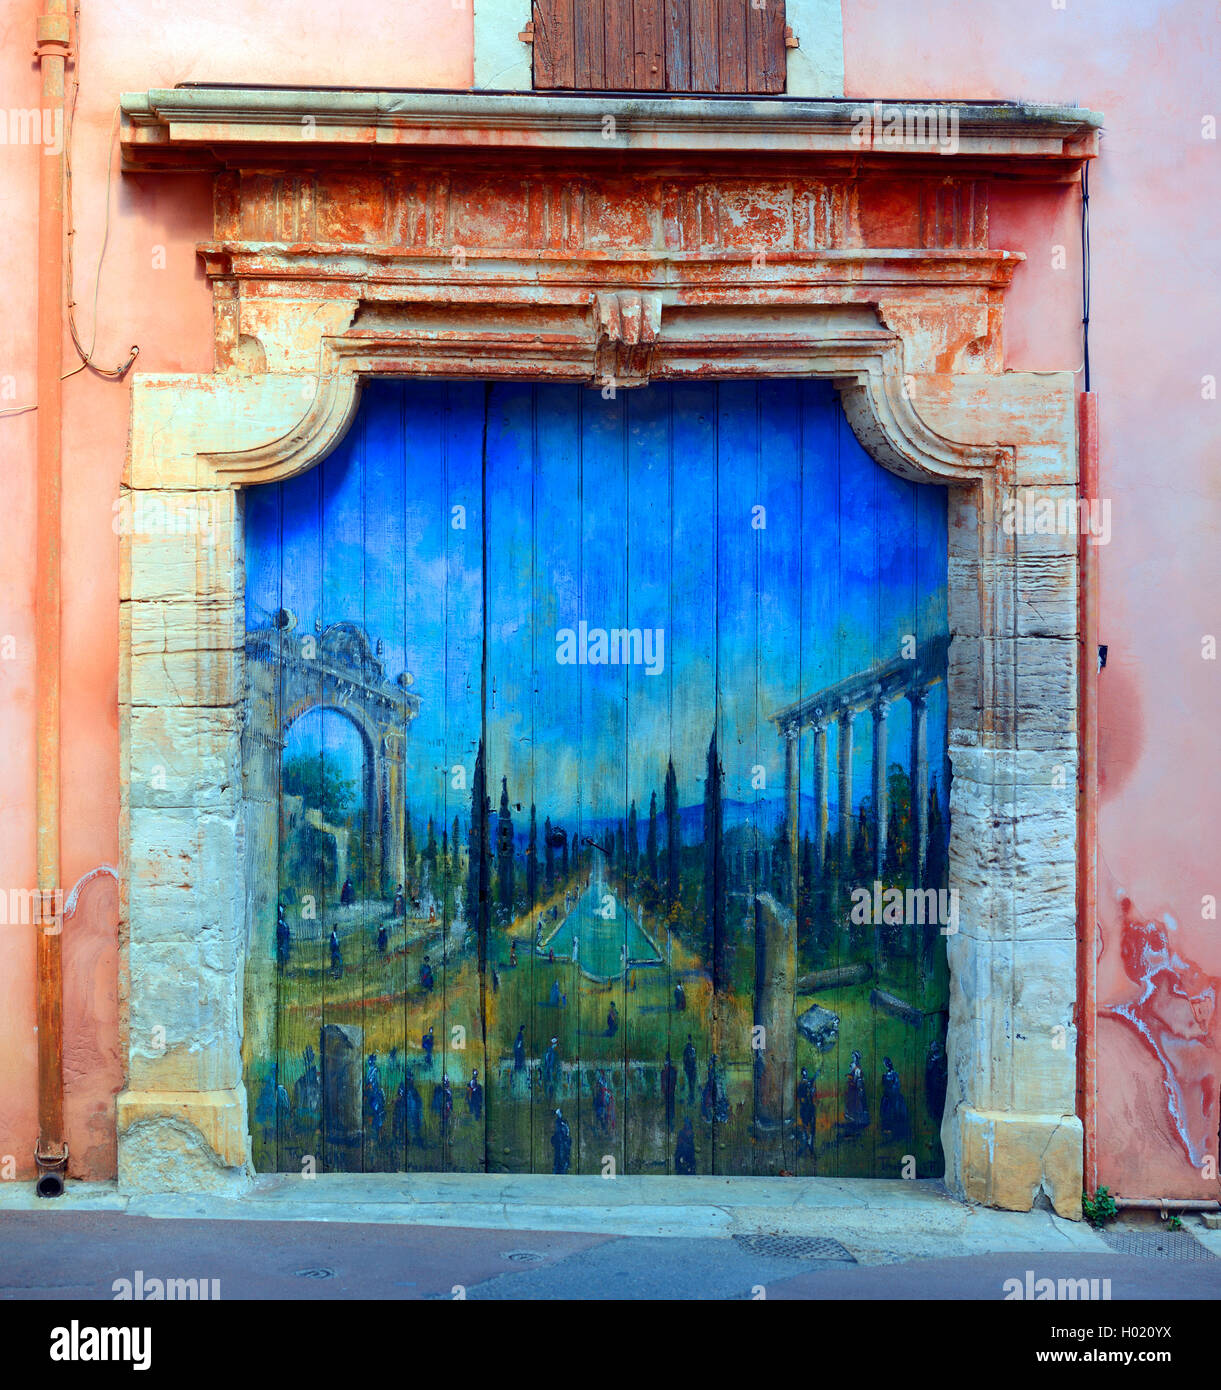 Vieille porte peinte, France, Provence, Luberon, Roussillon Banque D'Images